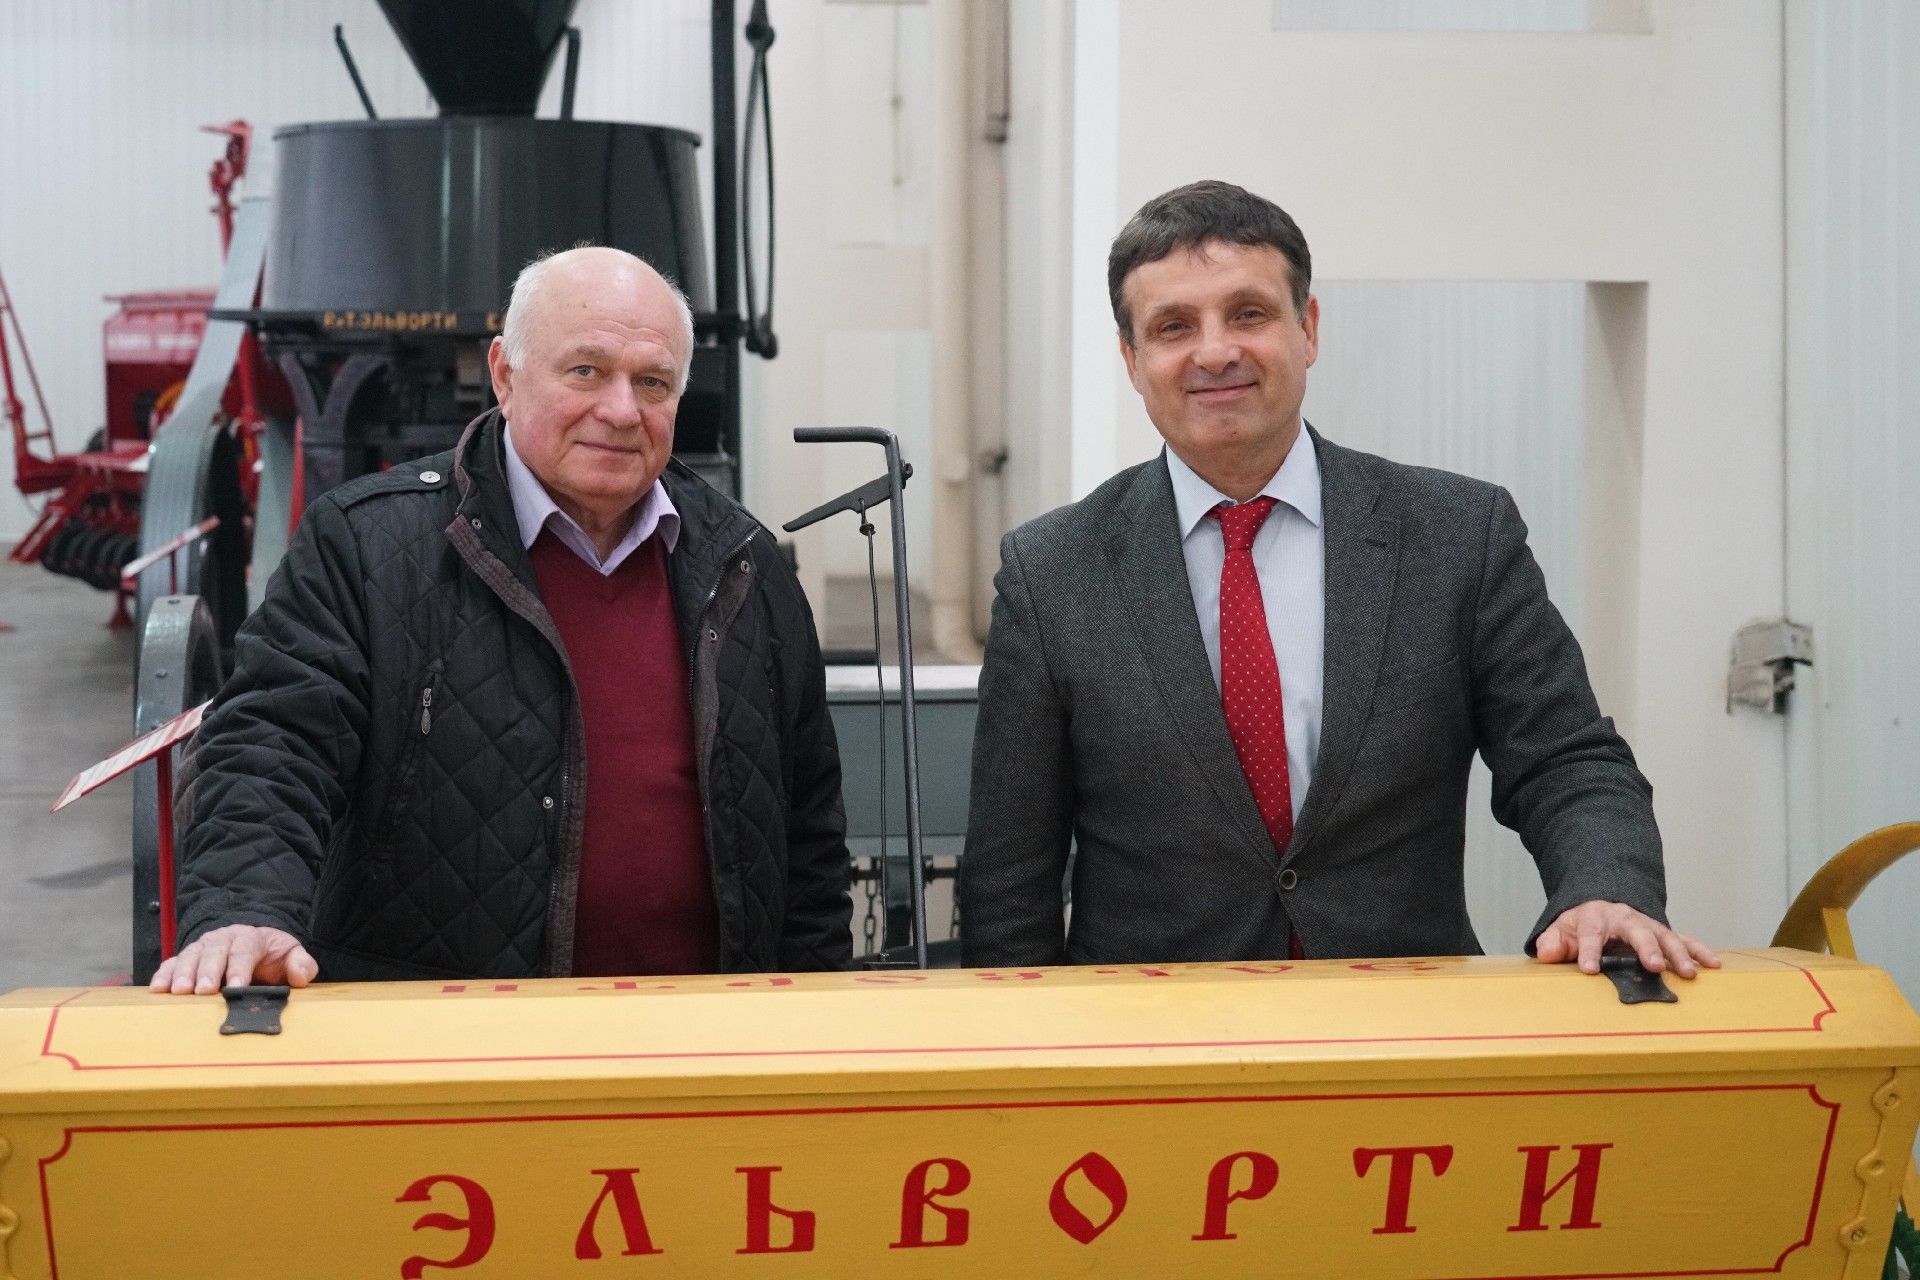 Представники НТУ Харківський політехнічний інститут відвідали завод Ельворті